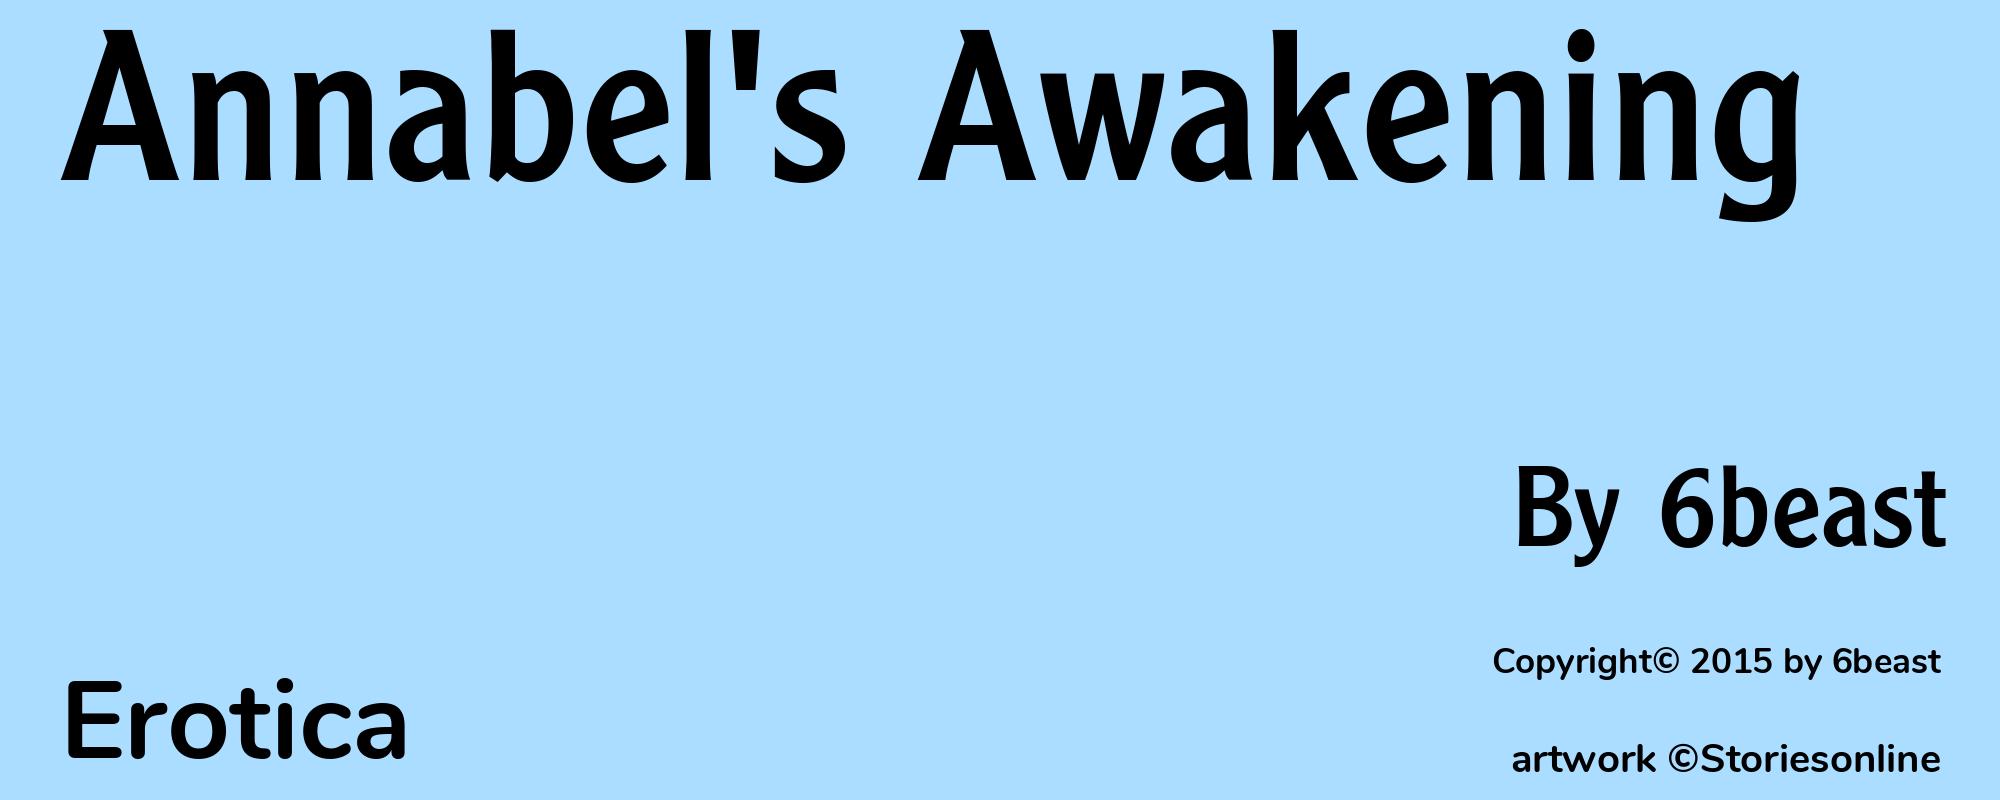 Annabel's Awakening - Cover